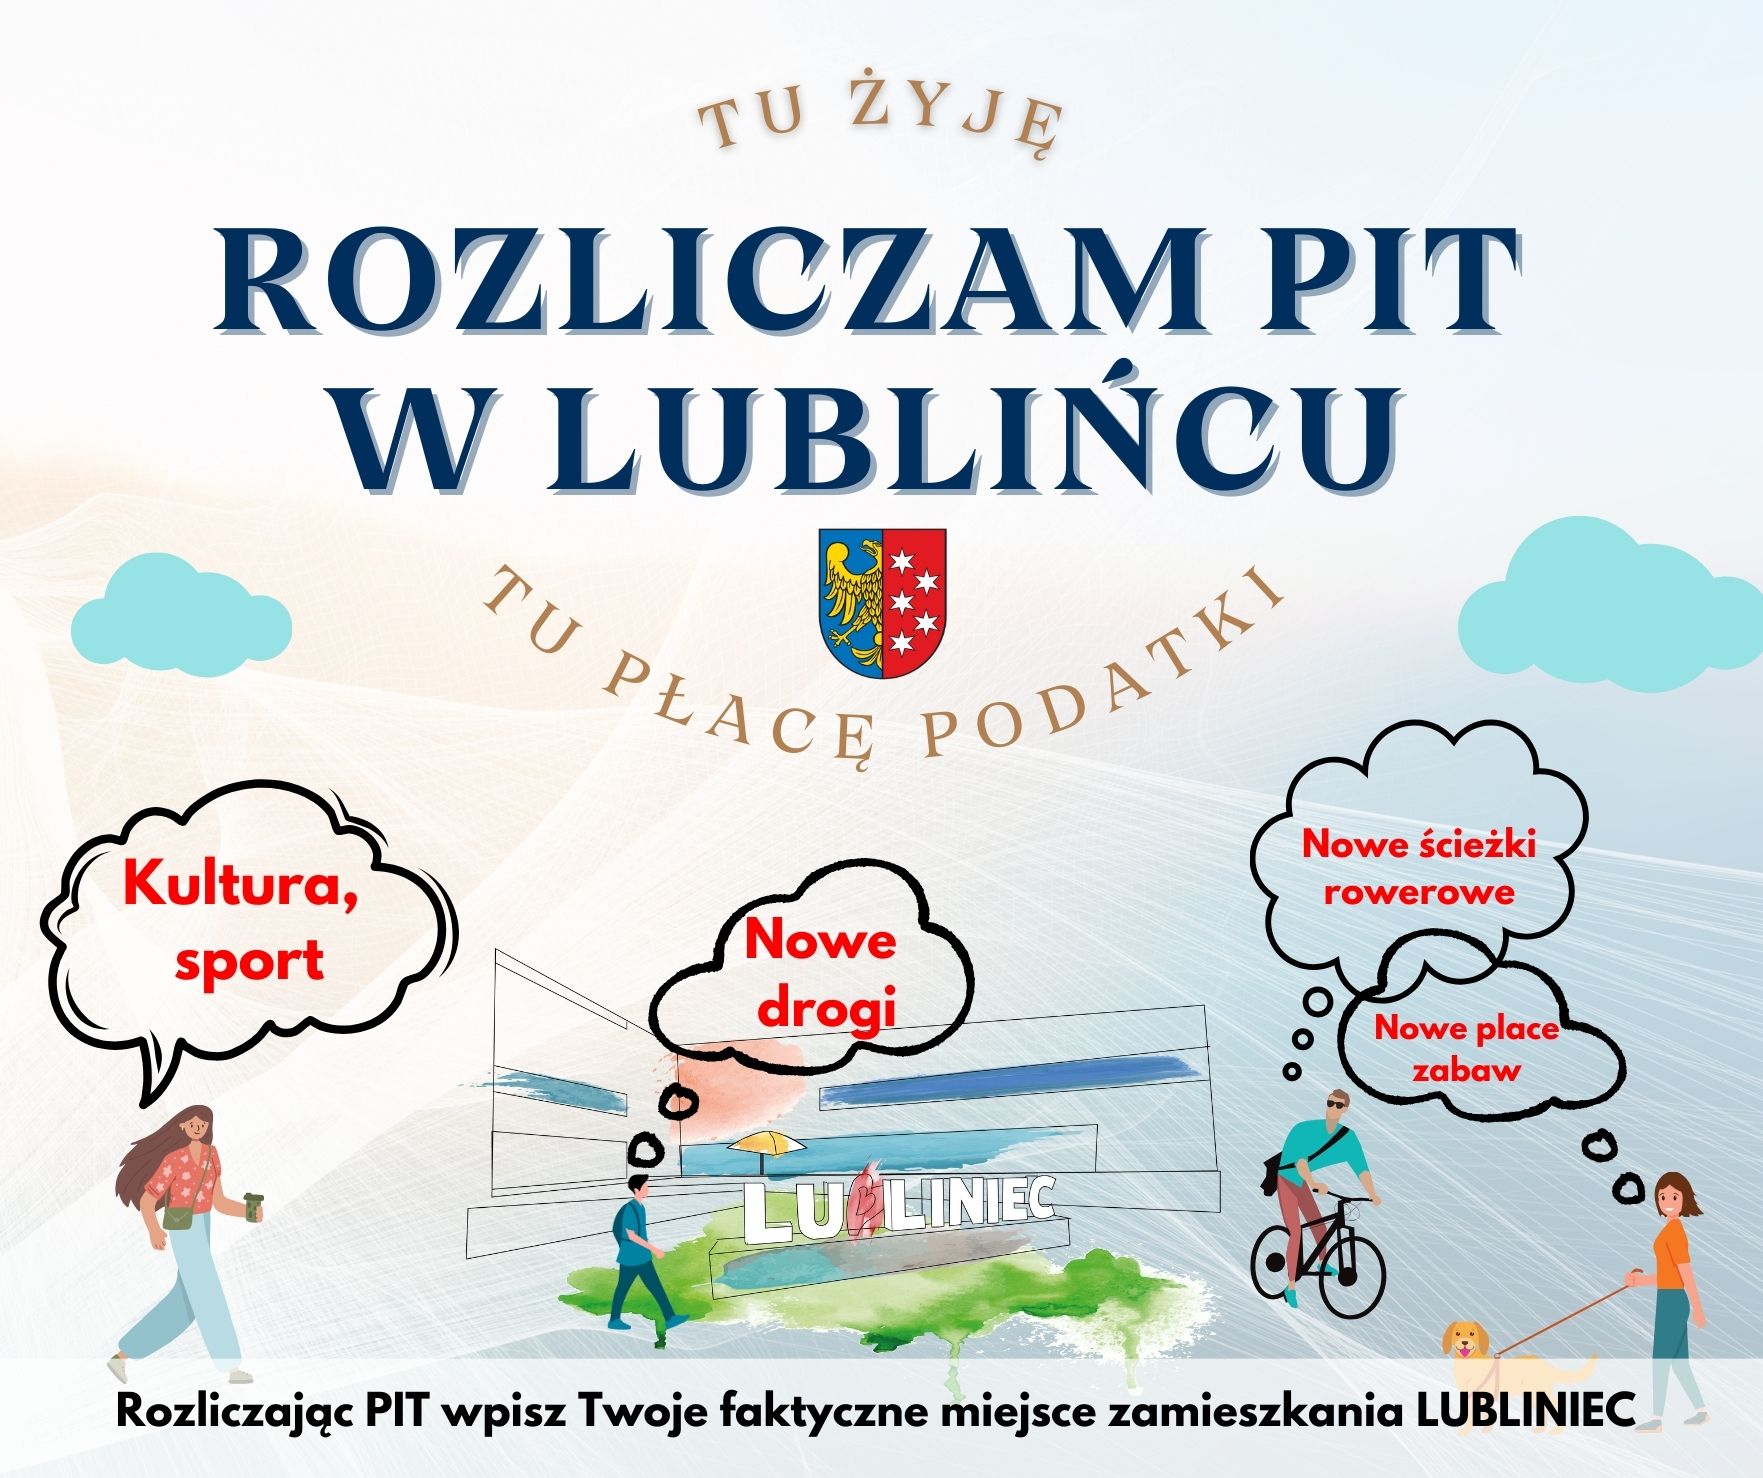 Rozliczam PIT  w Lublińcu, rysunek Lubiteki z napisem Lubliniec i grafikami ludzi któży mają wpisane w chmurki na co przeznaczane są podatki z rozliczenia PIT